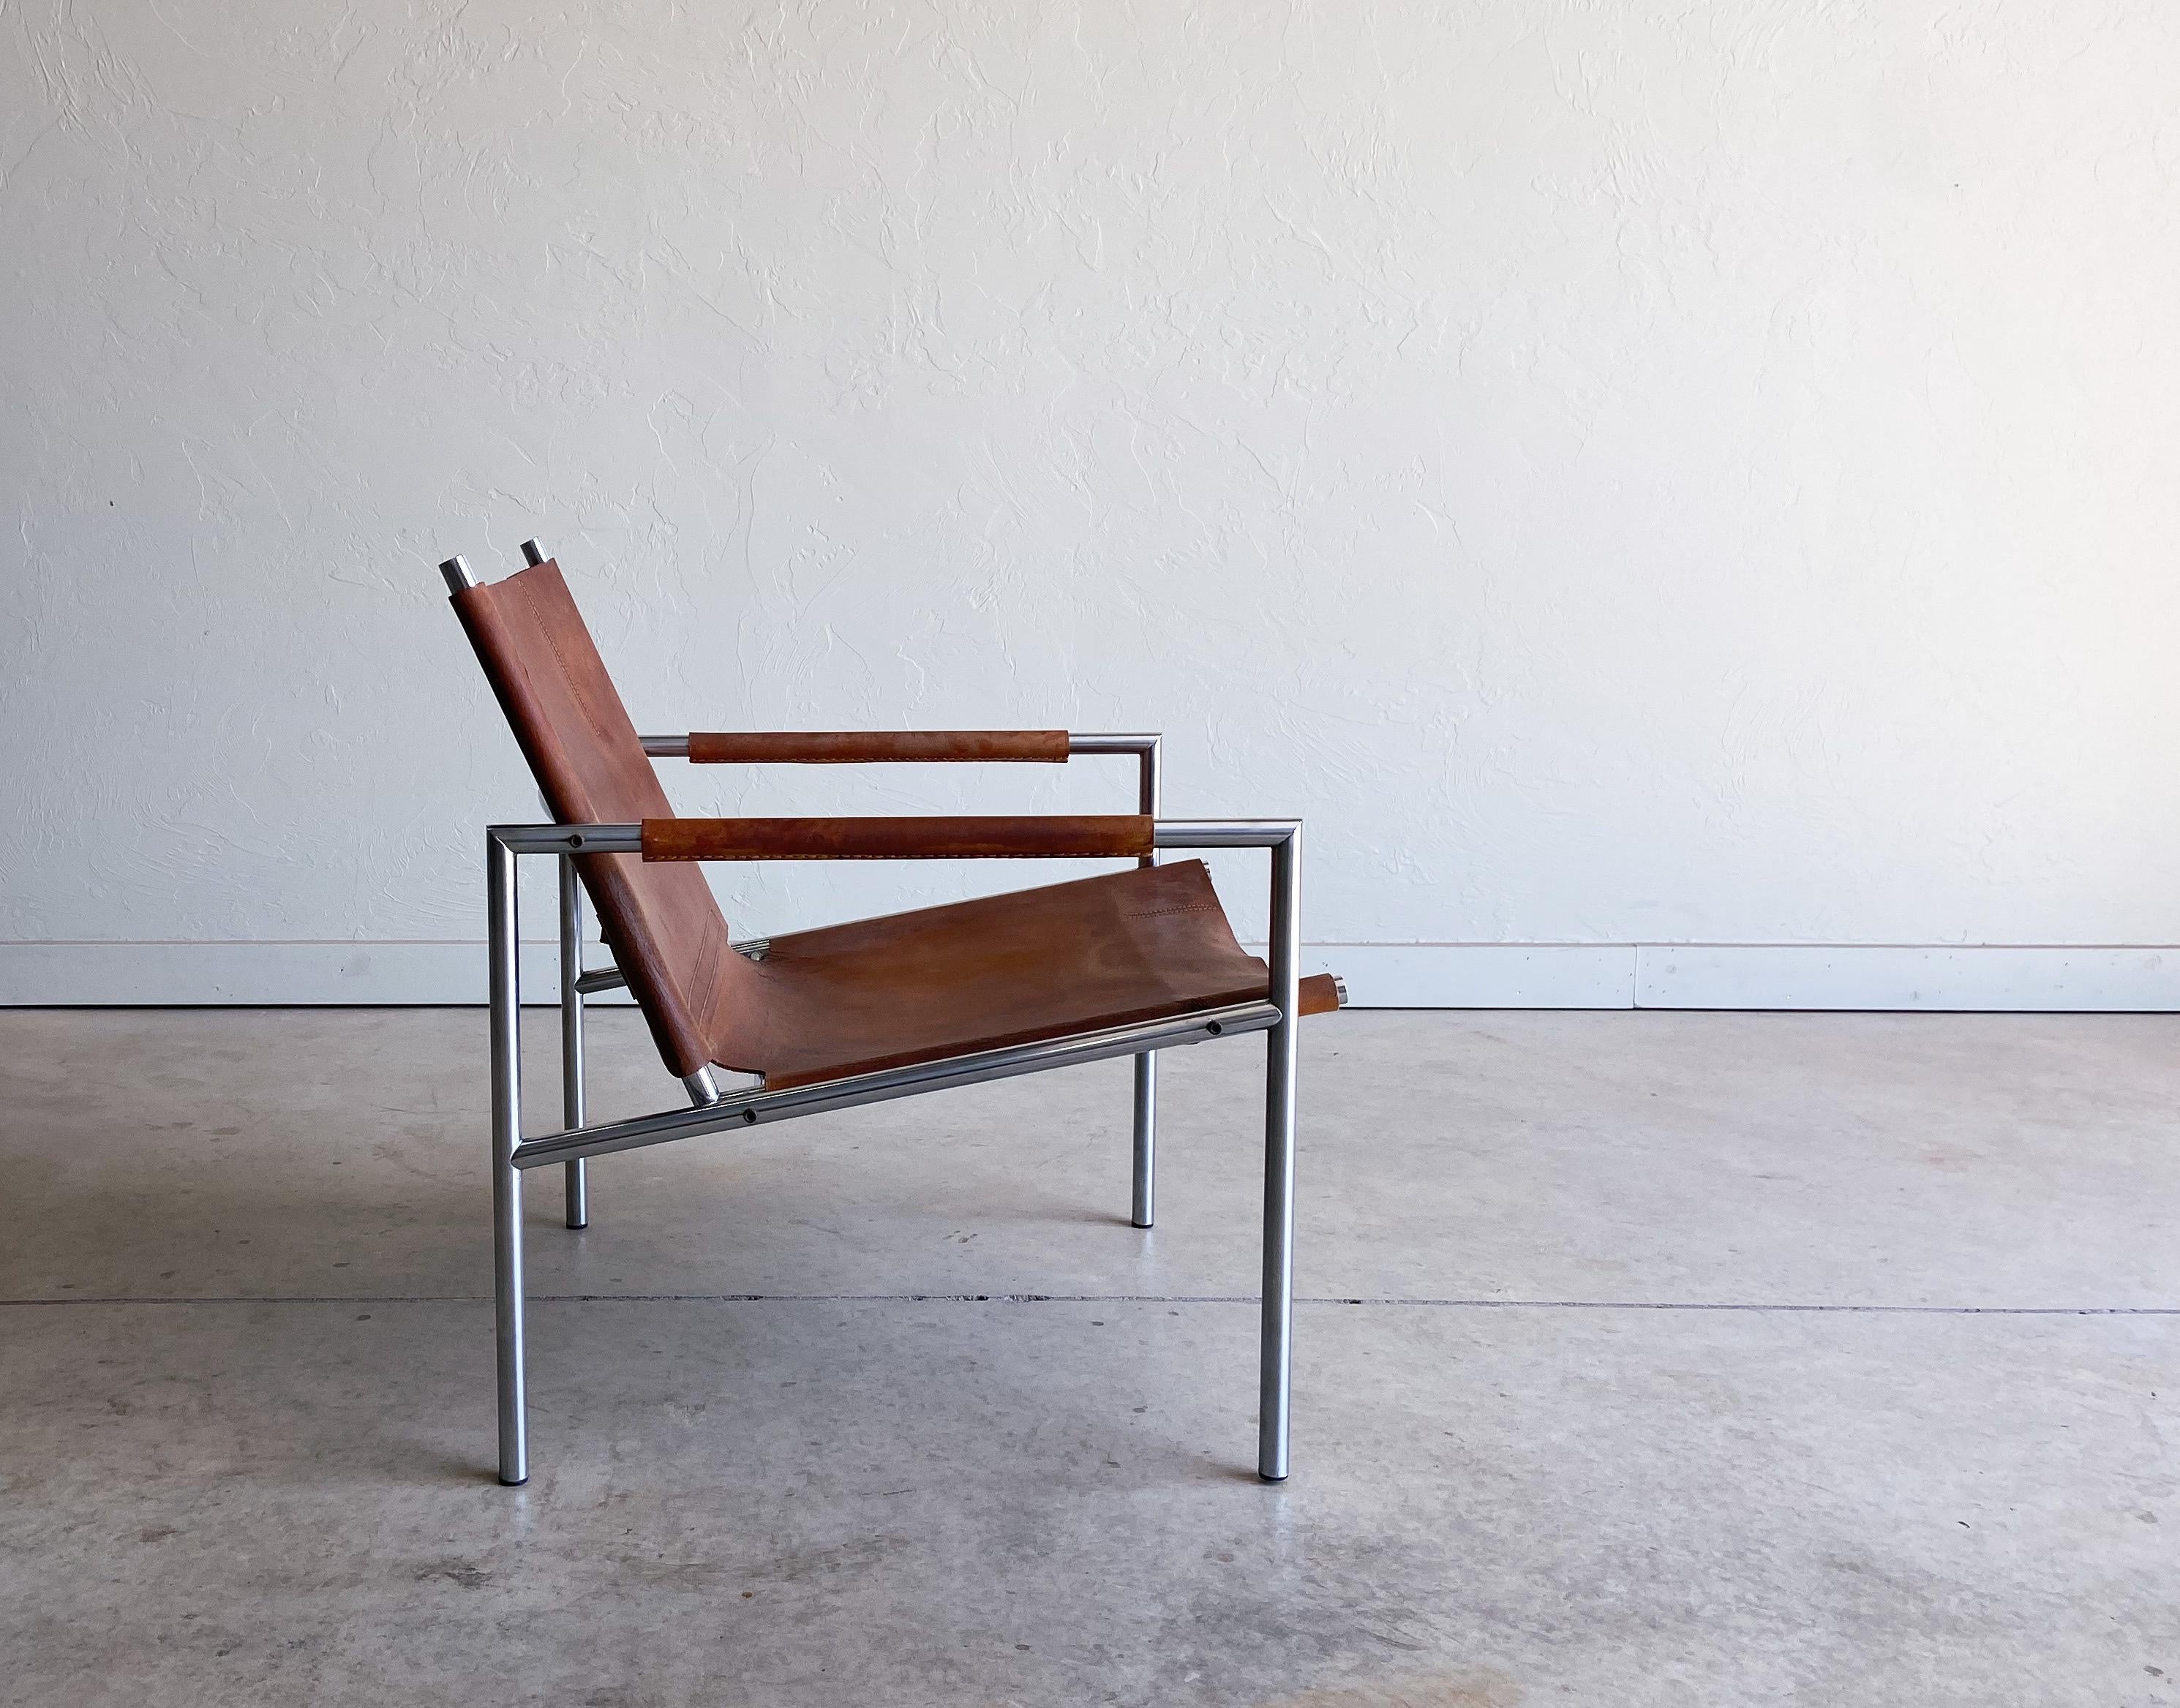 Une belle chaise longue conçue par Martin Visser, modèle SZ02. Doté d'un siège épais en cuir de selle d'une seule pièce, soutenu par un cadre en acier chromé. Ergonomique et confortable. Une chaise merveilleuse dans l'ensemble, avec une position et